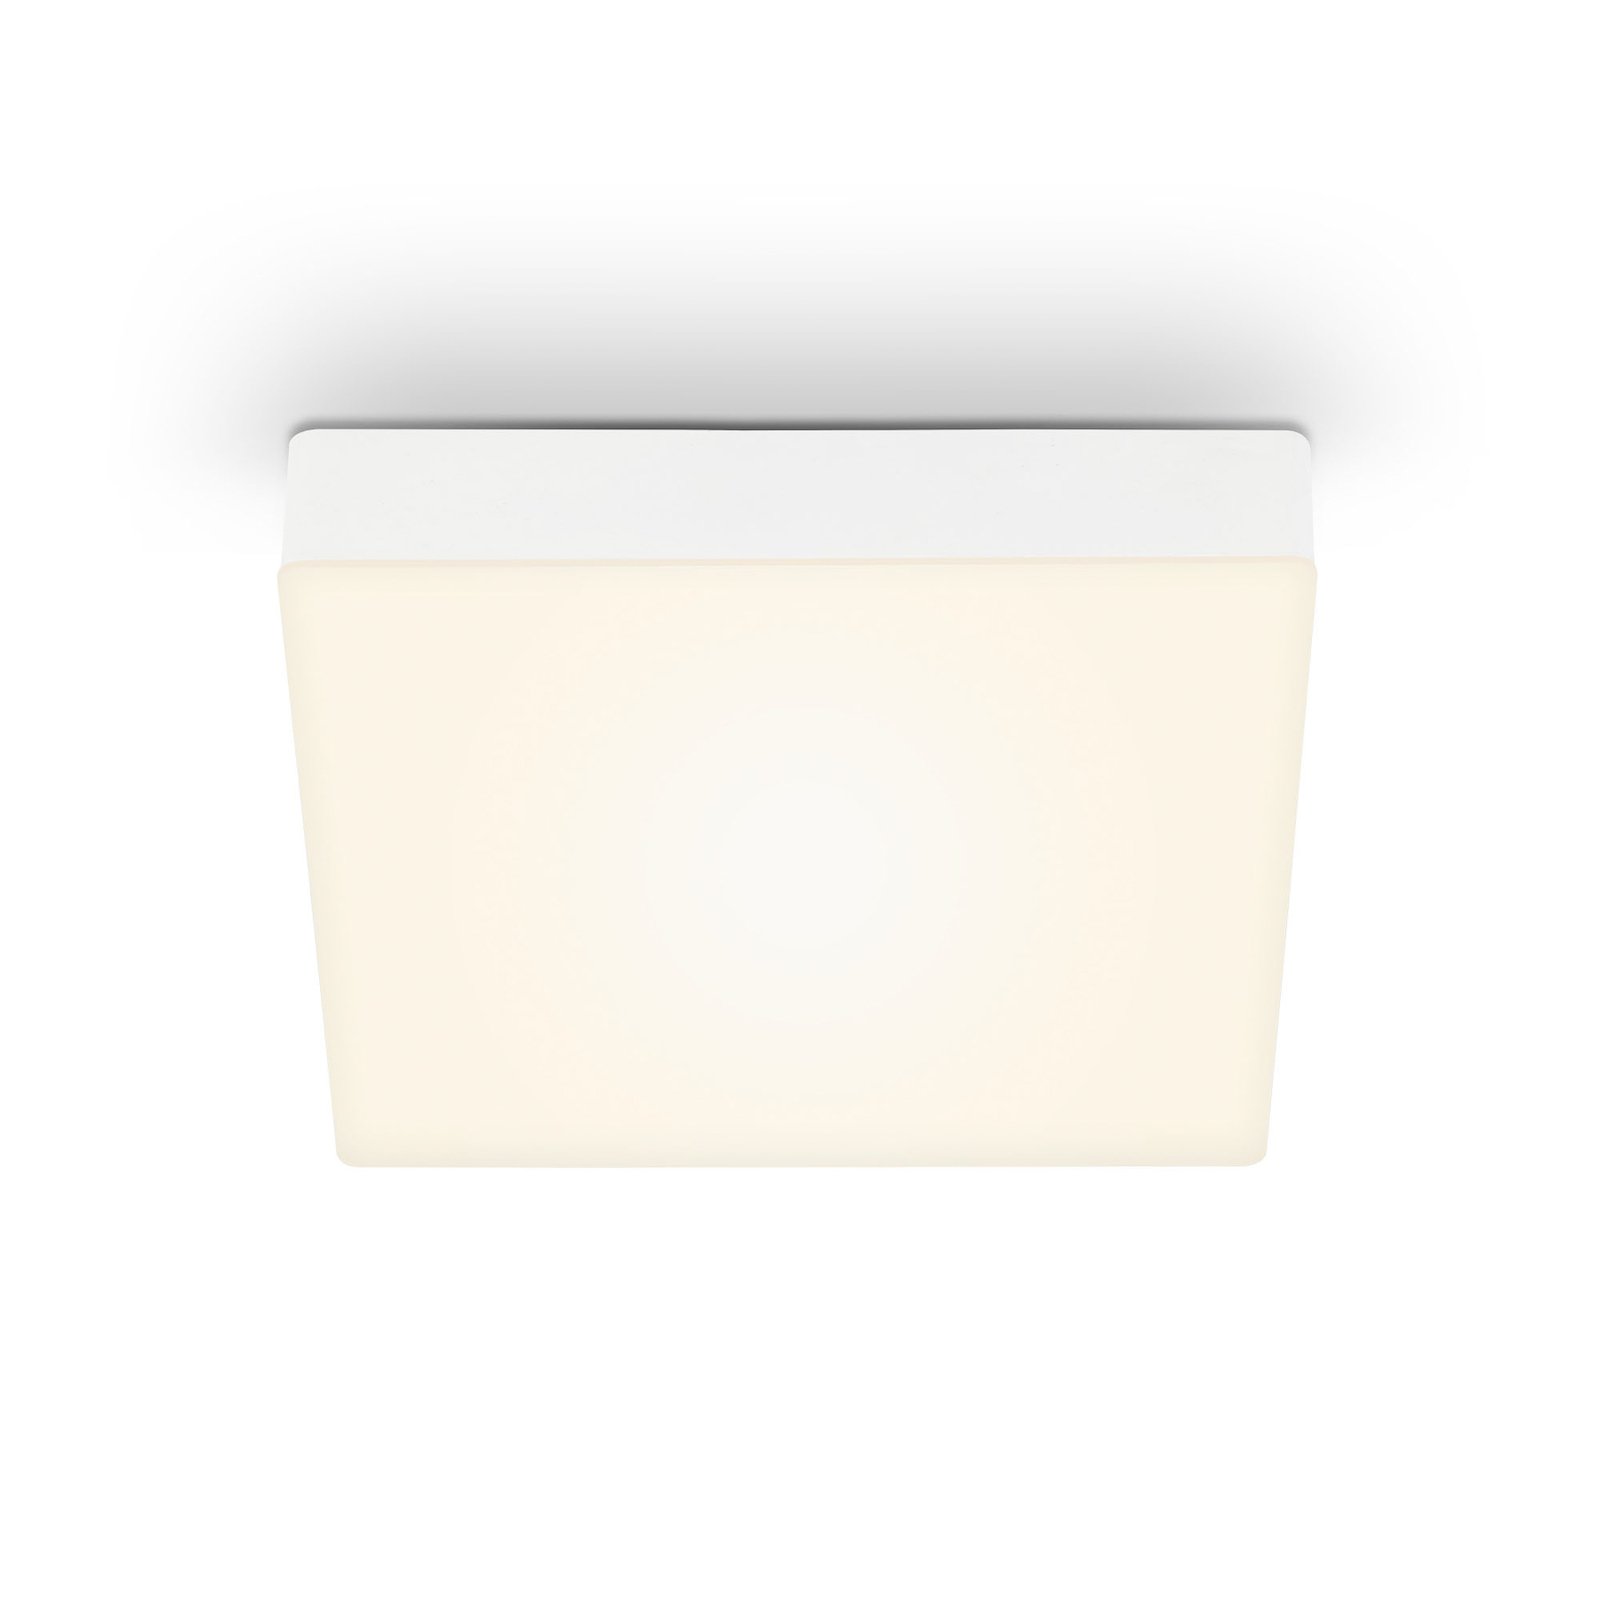 LED-Deckenleuchte Flame, 21,2 x 21,2 cm, weiß